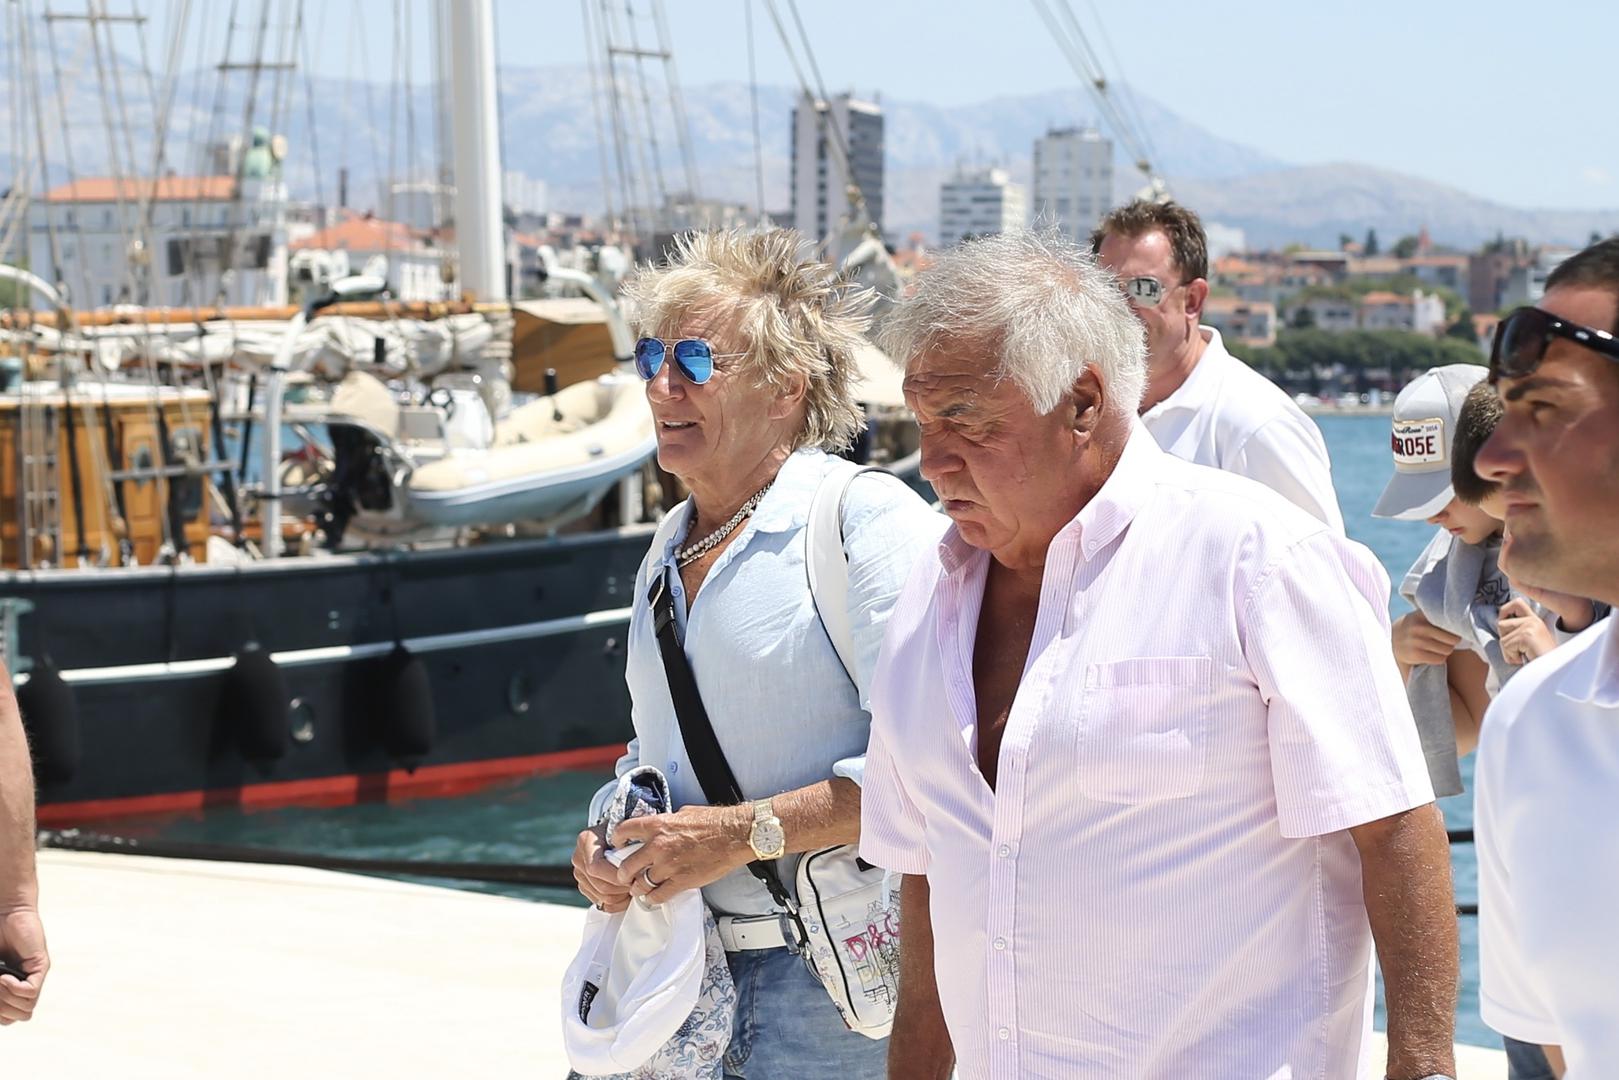 Legendarni britanski glazbenik Rod Stewart nakon odmora u Dalmaciji danas oko 13 sati napustio je jahtu koja je bile privezana u splitskoj luci, a koja je njegovoj obitelji bila dom proteklih dana dok je krstario našom obalom.